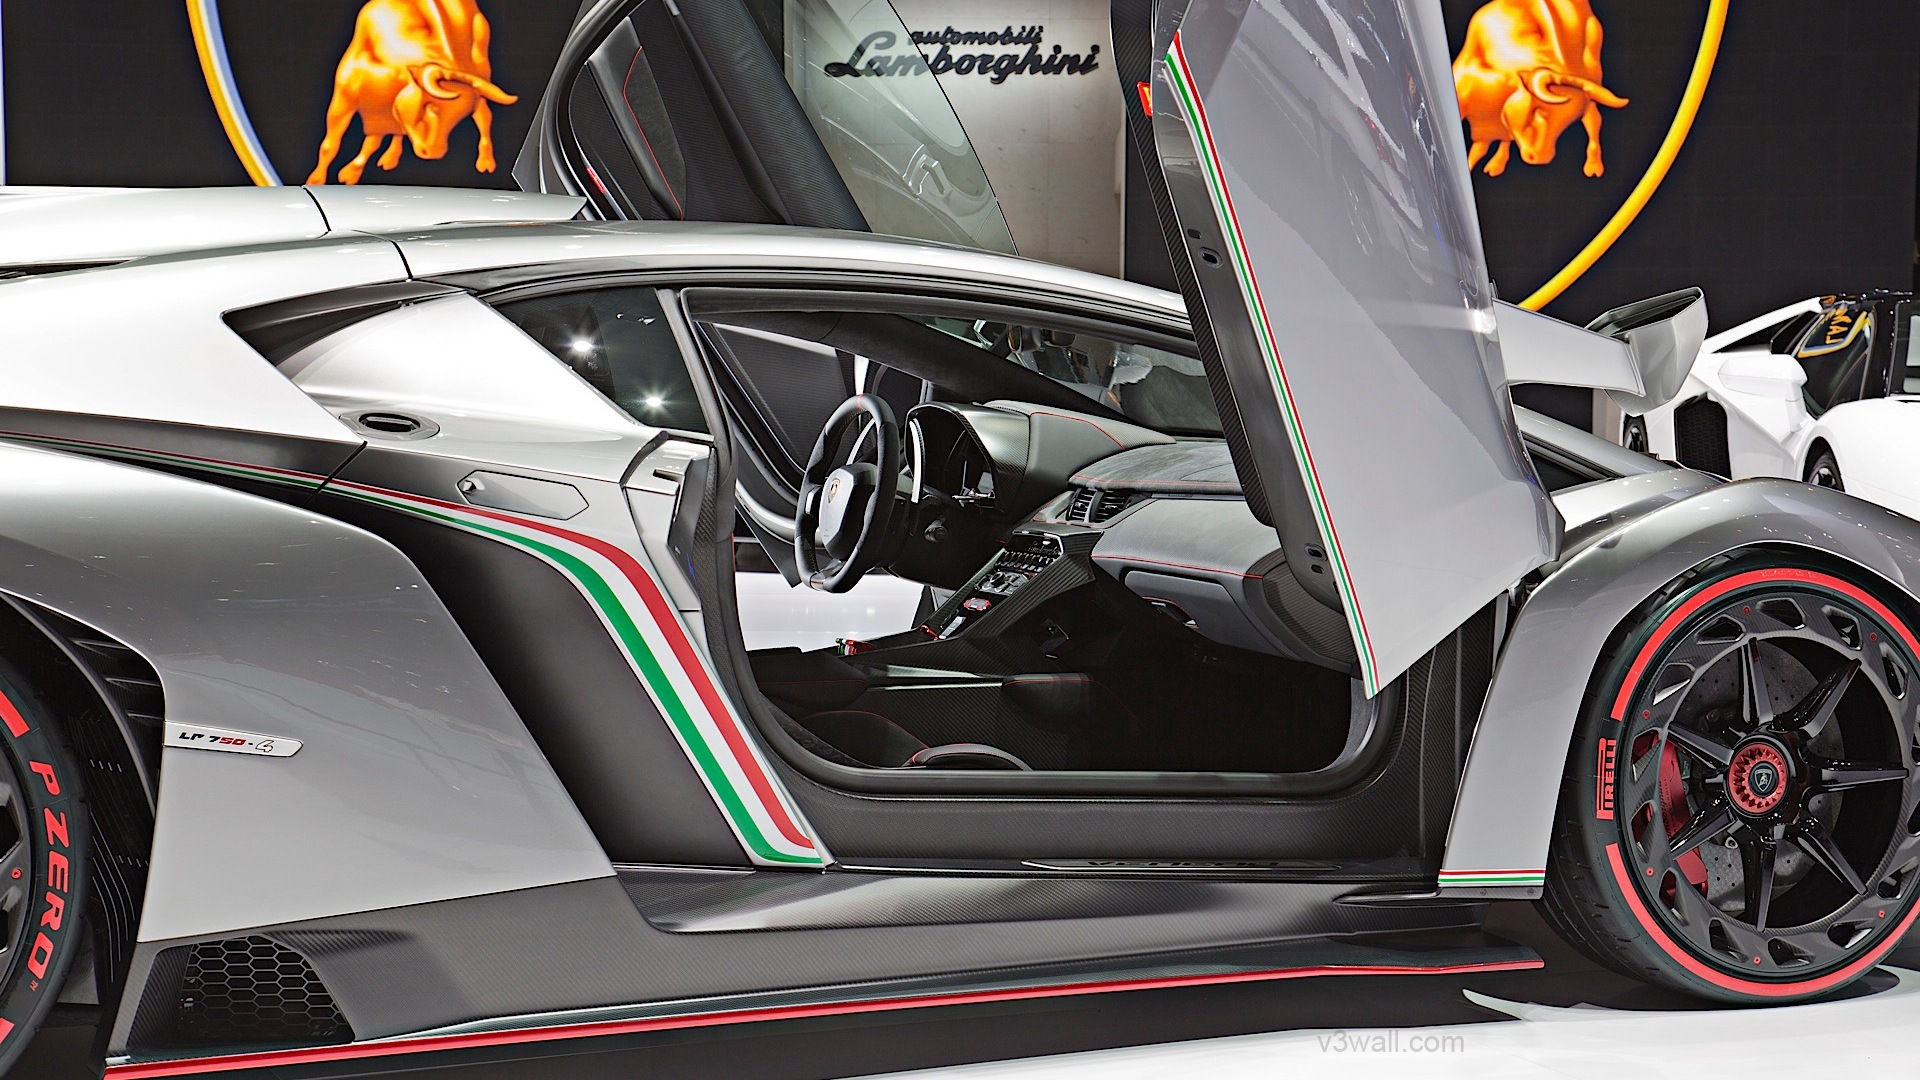 2013 Lamborghini Veneno 蘭博基尼Veneno豪華超級跑車高清壁紙 #11 - 1920x1080